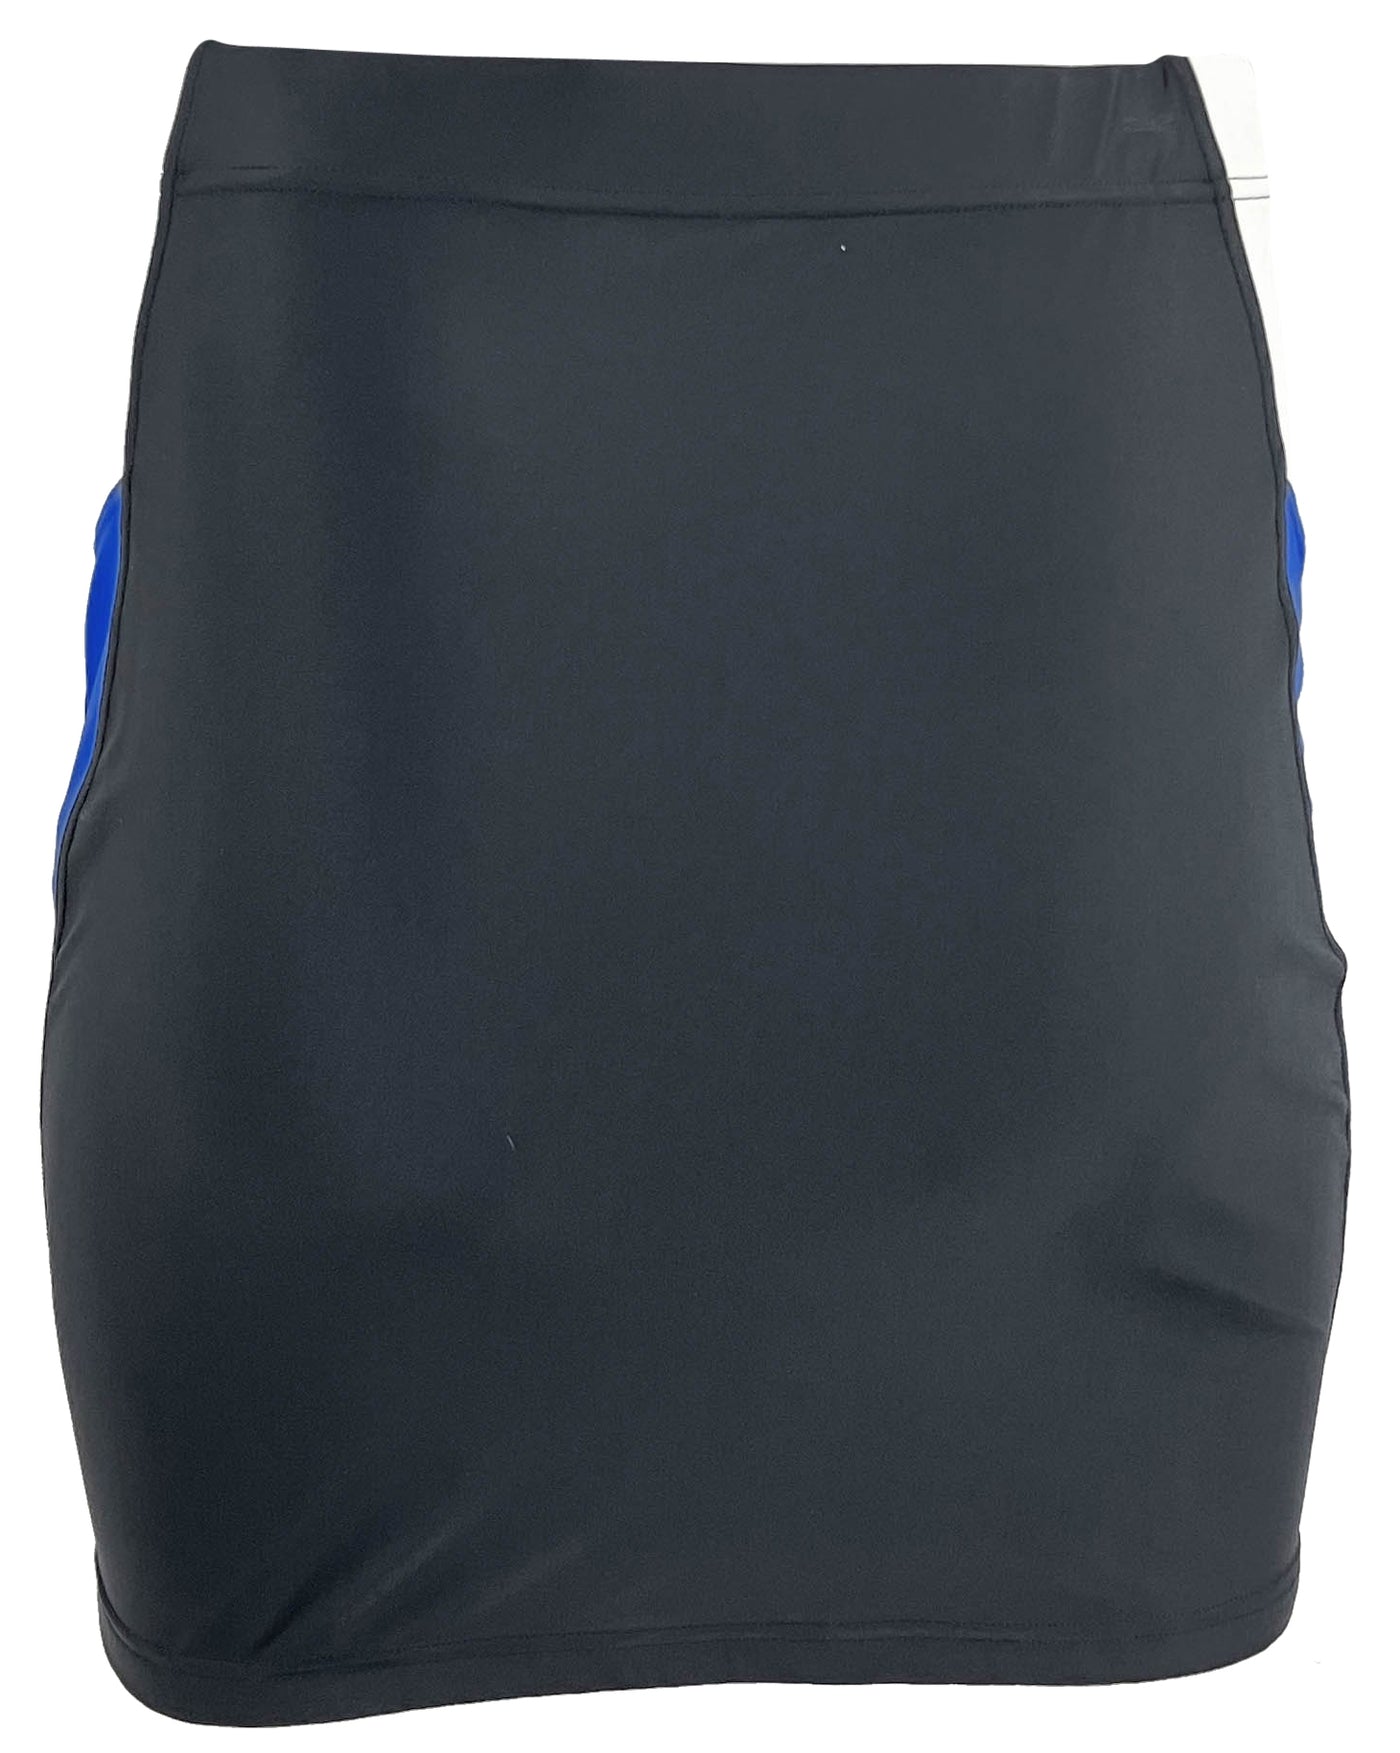 Balenciaga Tracksuit Skirt in Black - Discounts on Balenciaga at UAL